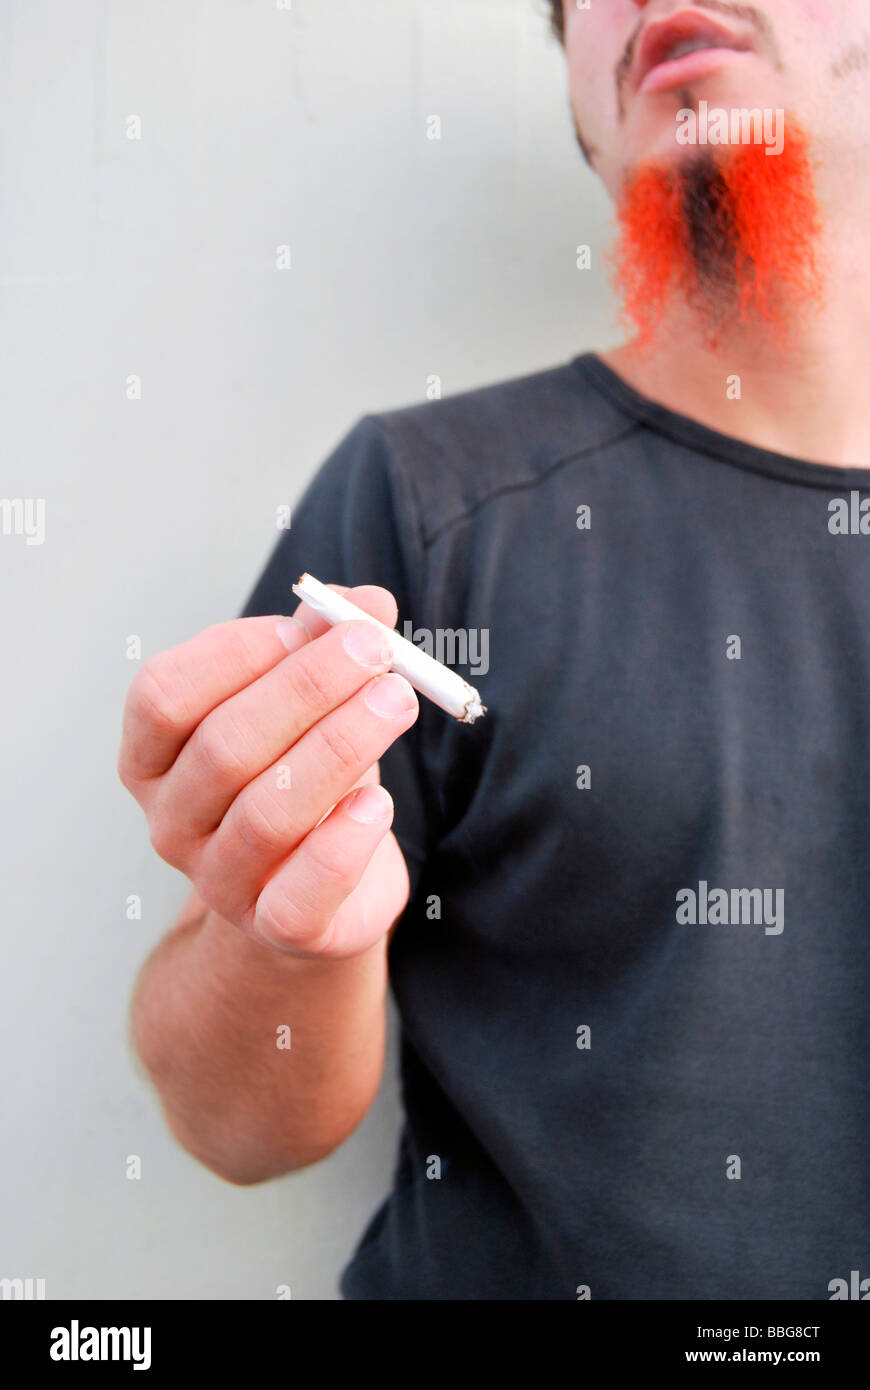 Fumeurs mauvaise herbe, jeune homme avec barbe rouge-noir tenant un joint, cigarette roulée à la main Banque D'Images